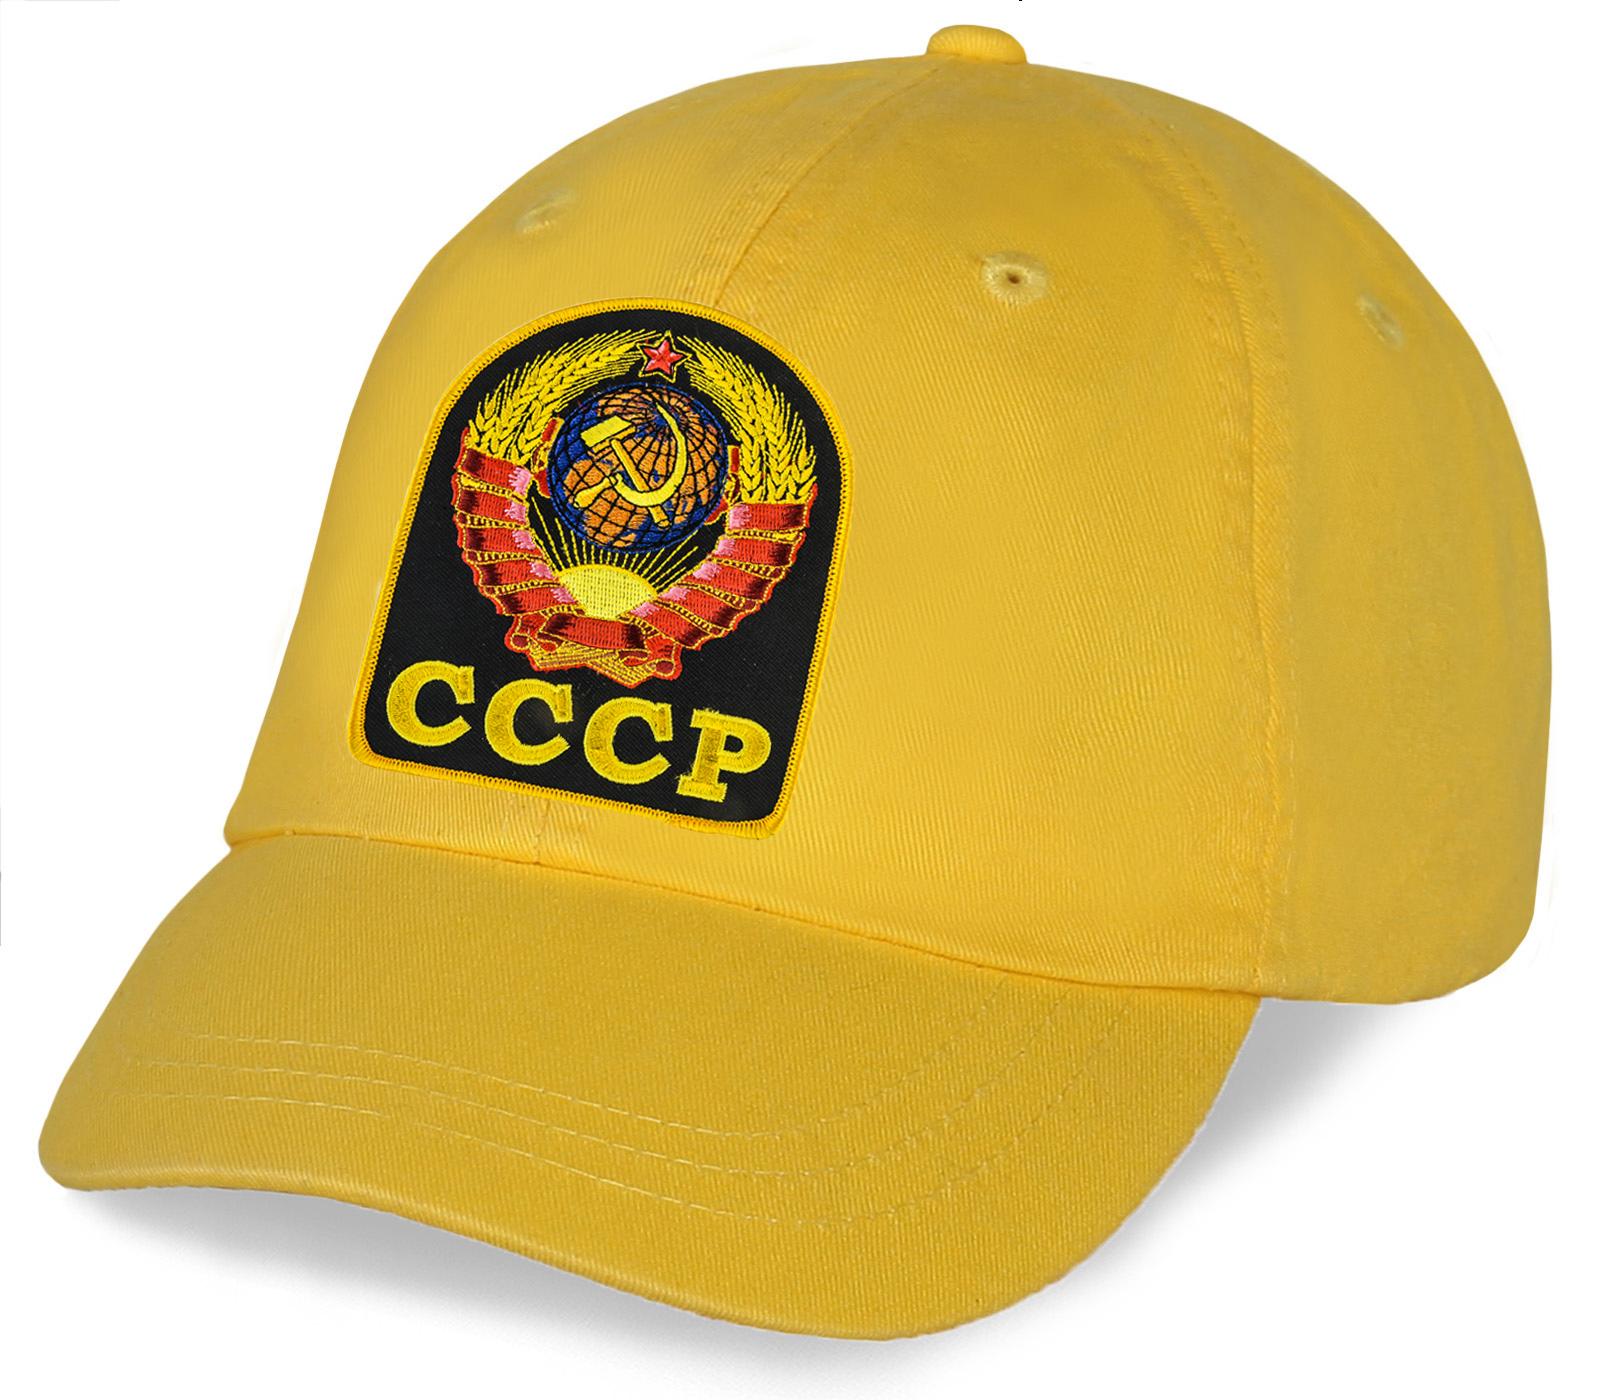 Мужская кепка с вышивкой Герб СССР (Желтая)